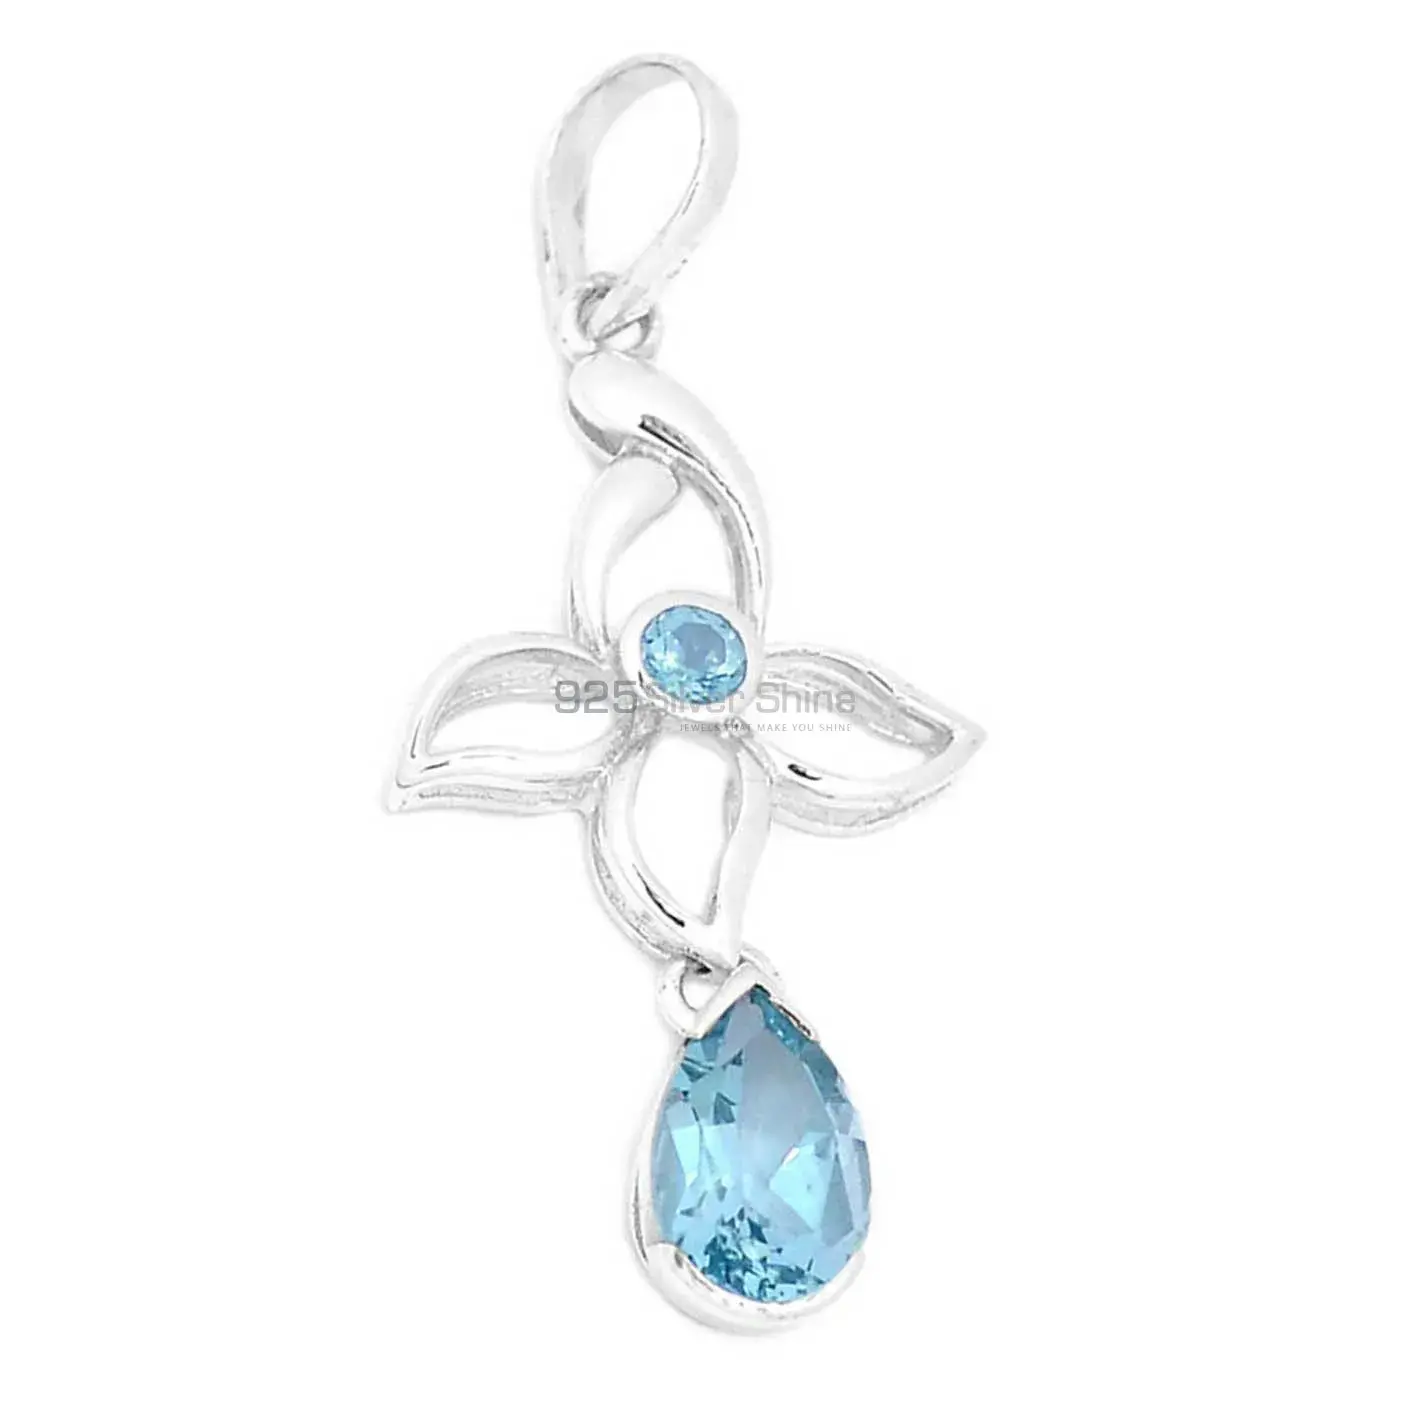 Blue Topaz Gemstone Pendants Wholesaler In Fine Sterling Silver Jewelry 925SP273-2_1